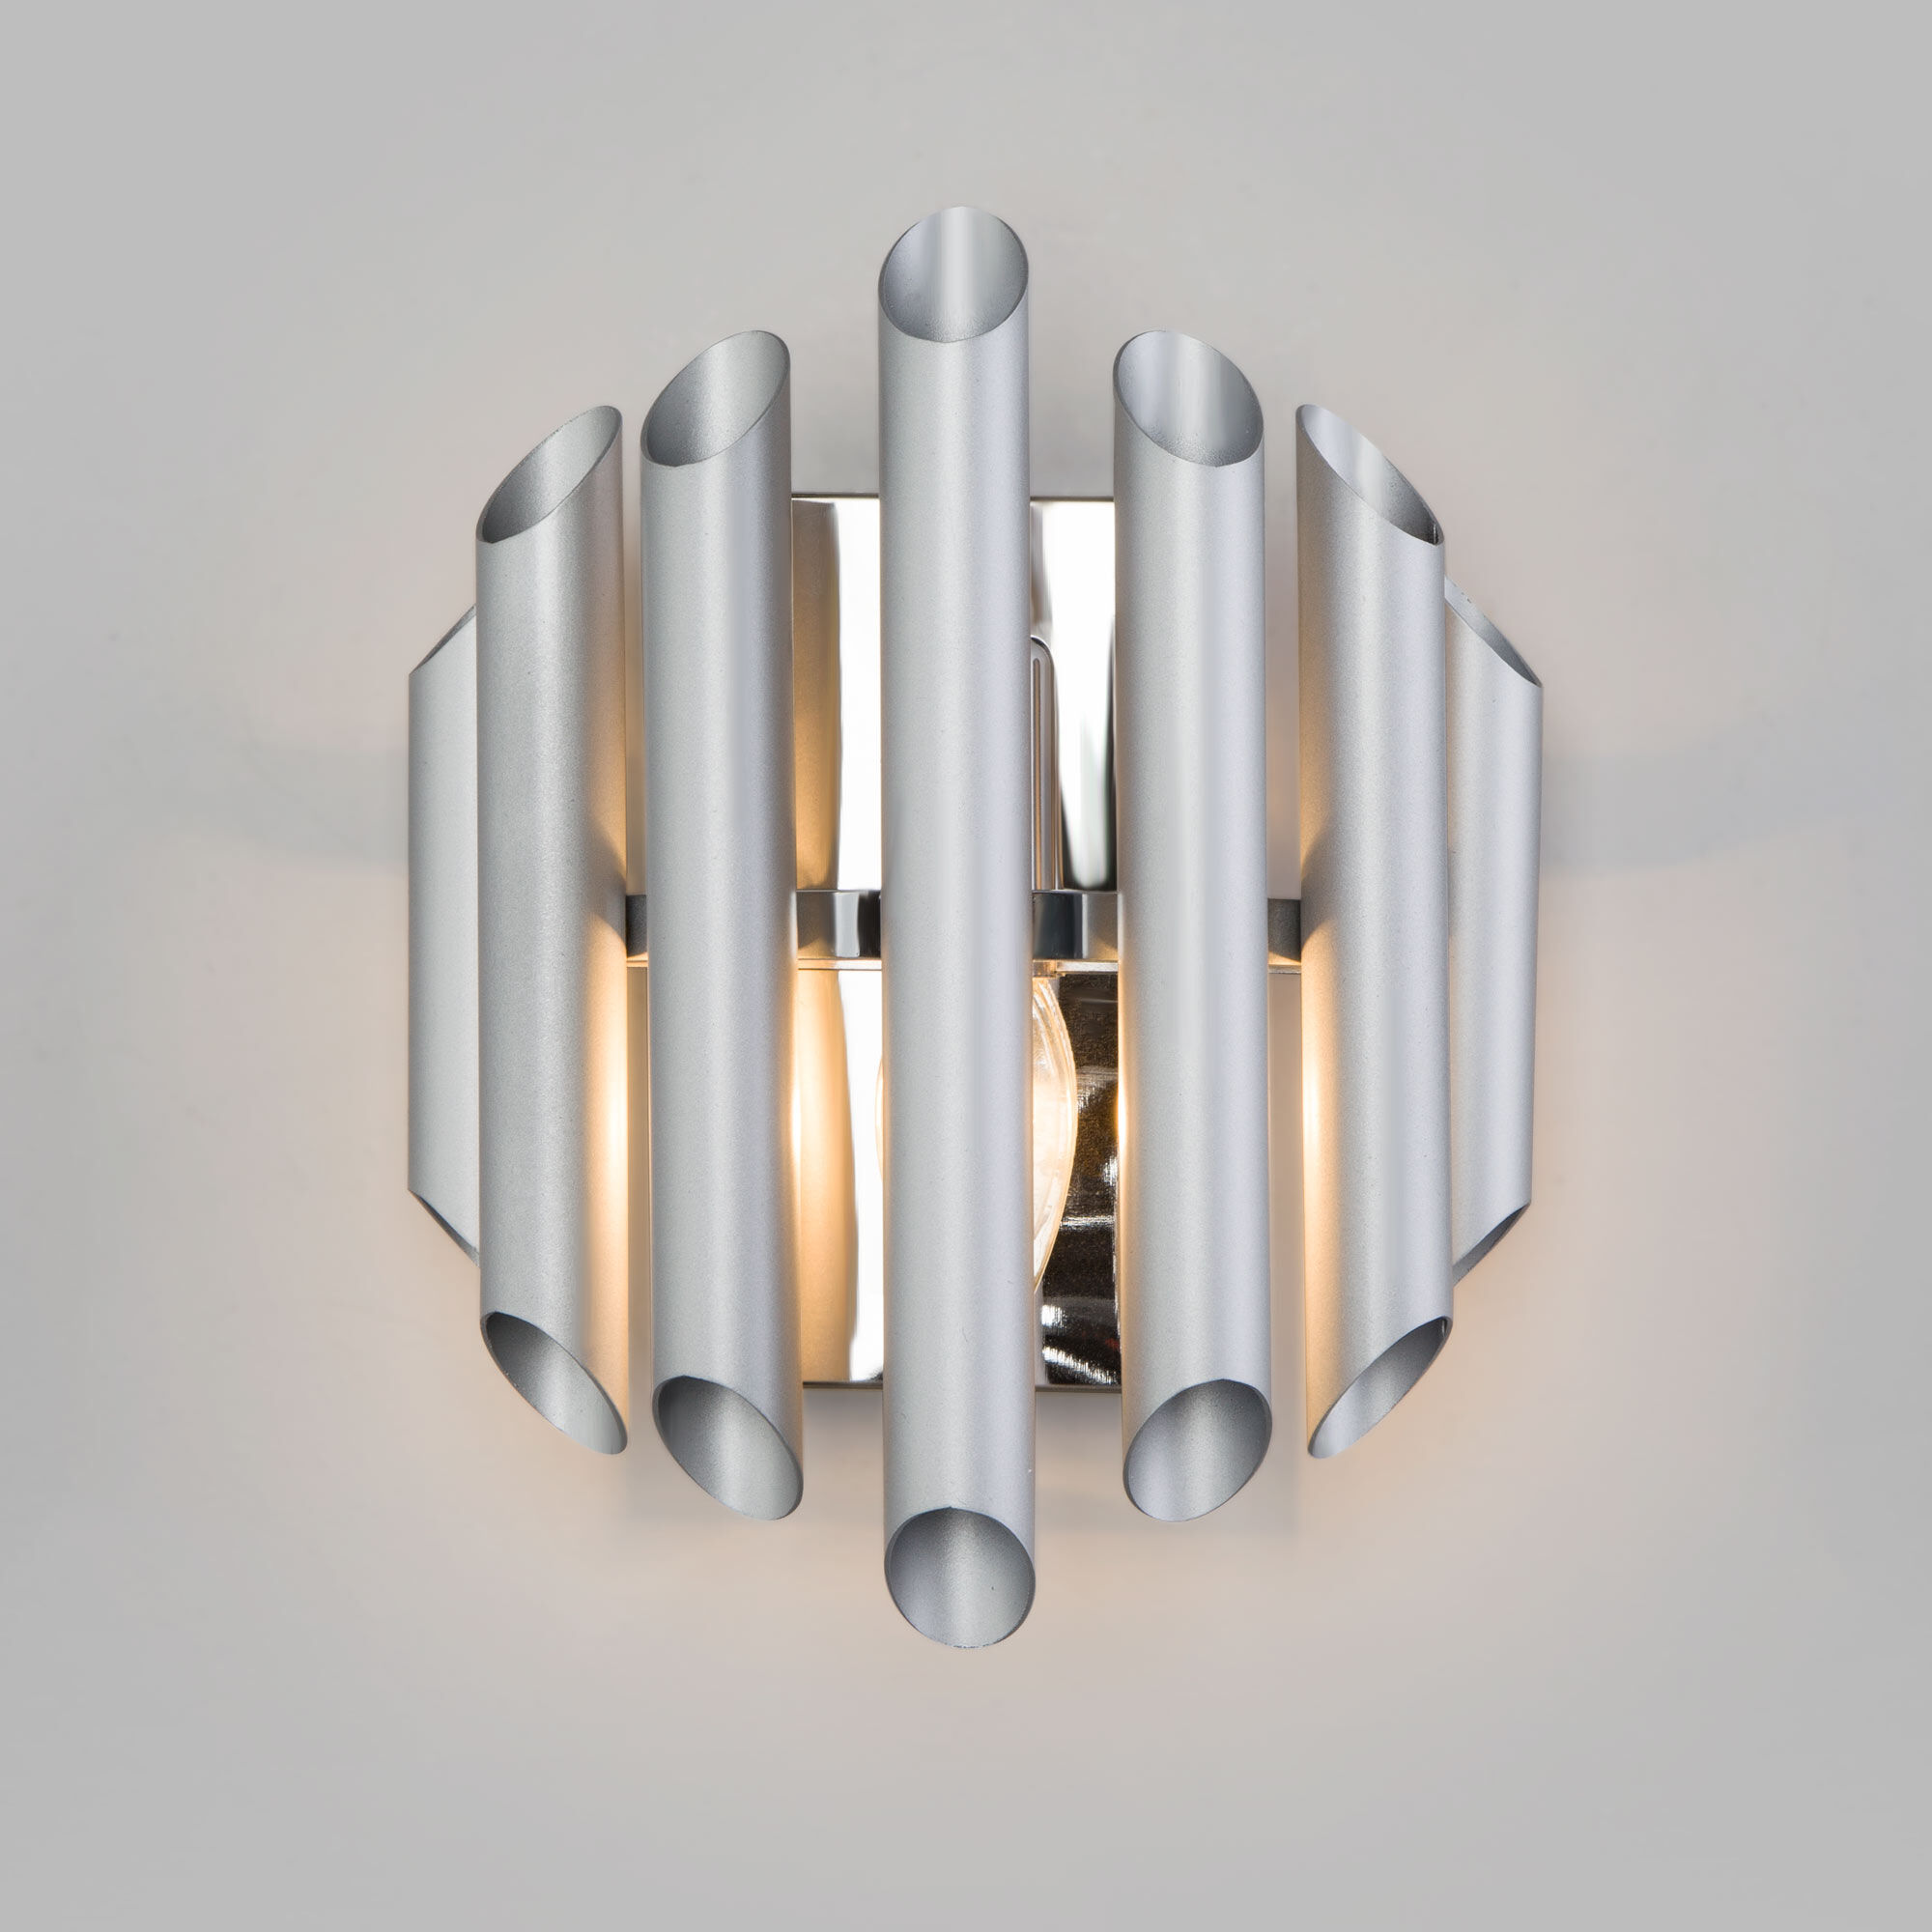 Настенный светильник с металлическим плафоном Bogate's Castellie 362/1 серебро. Фото 2